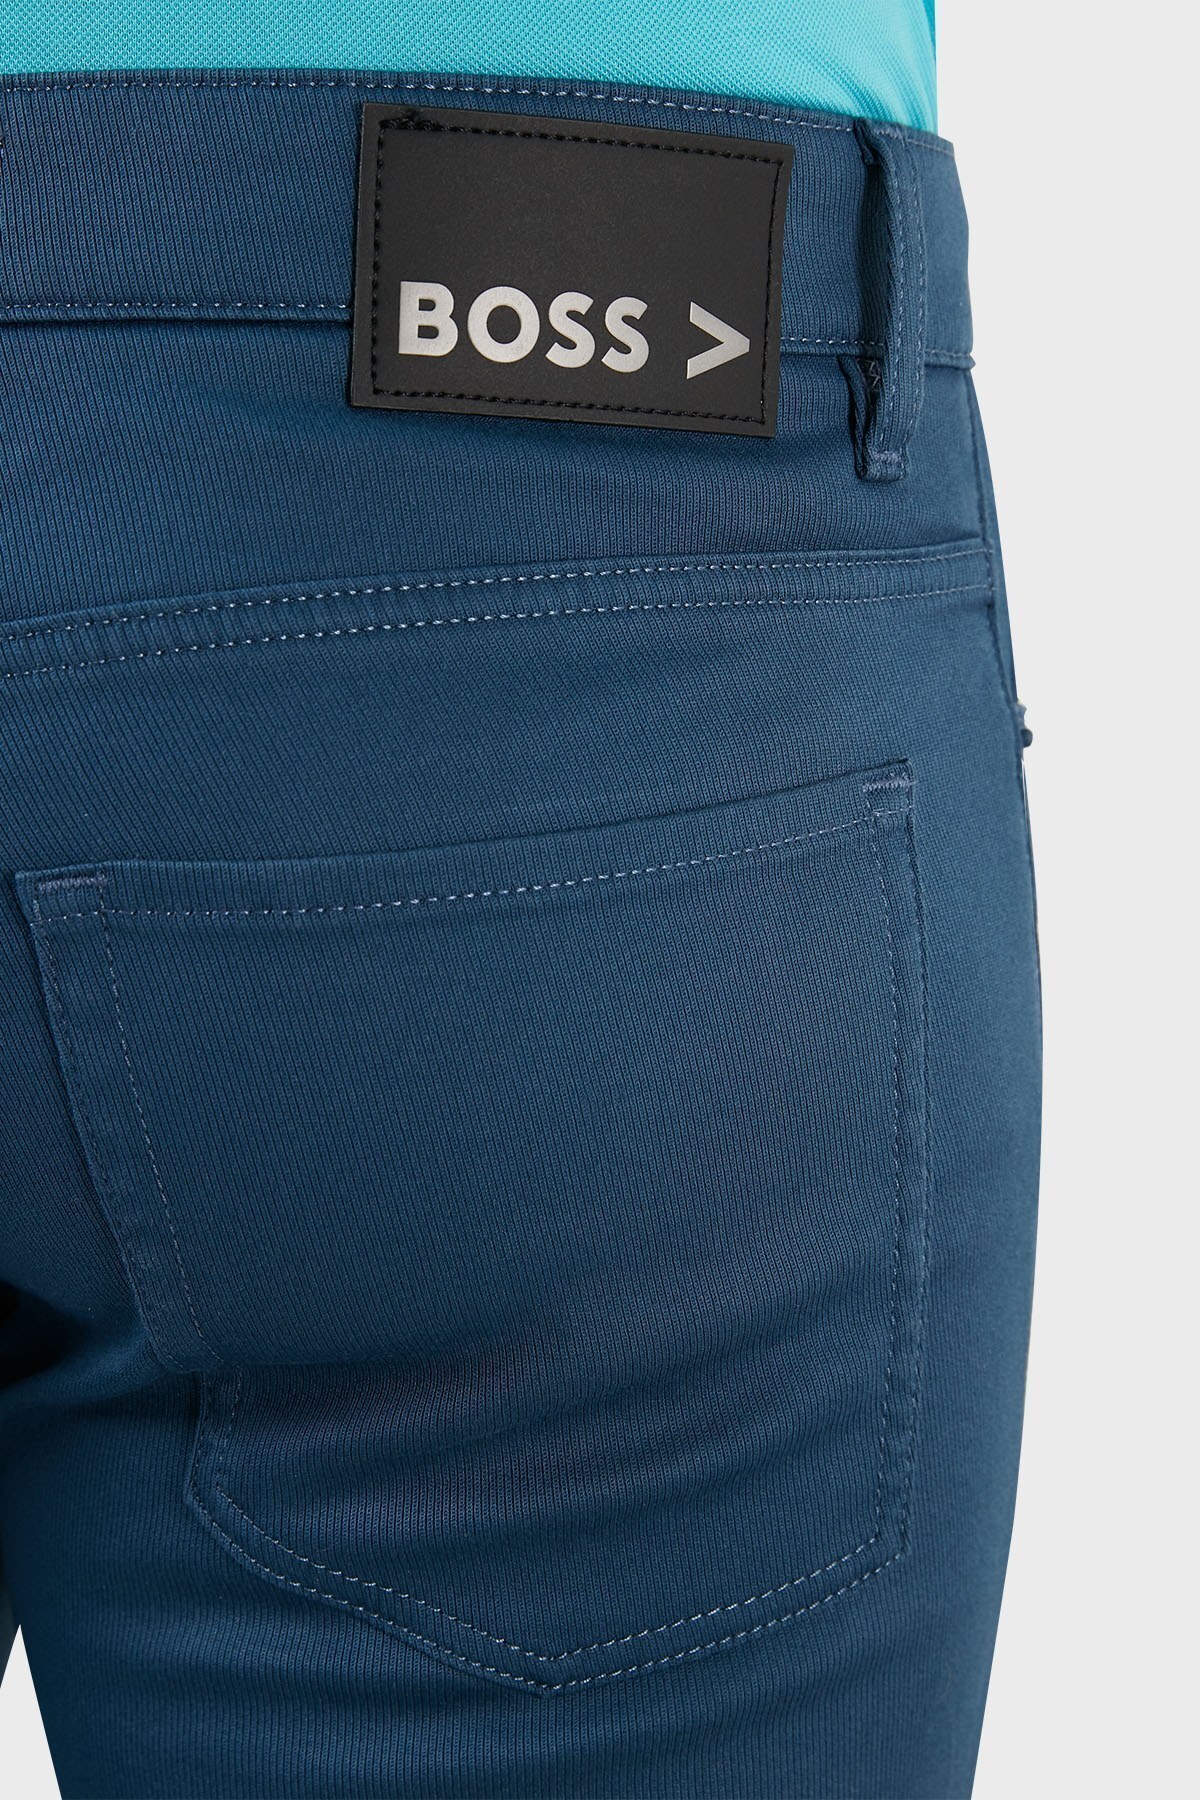 Boss Pamuklu Streç Normal Bel Slim Fit Jeans Erkek Kot Pantolon 50471115 413 LACİVERT